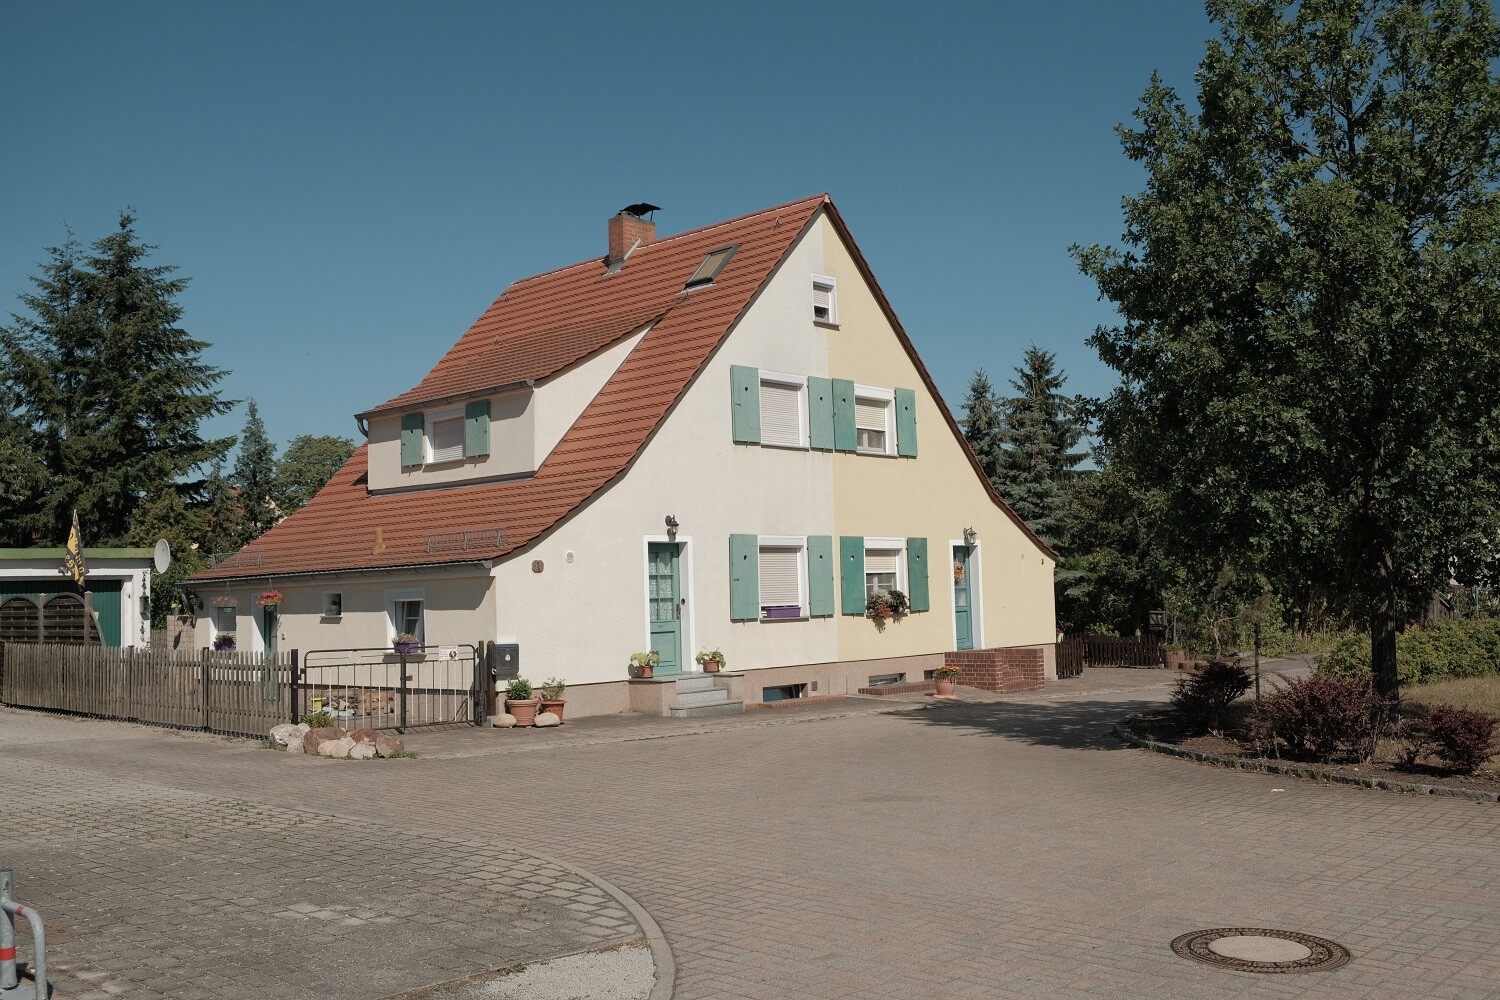 Foto Werksiedlung Lauta (Freunde der evangelischen Kirche Lauta-Stadt e.V. CC BY-NC-SA)